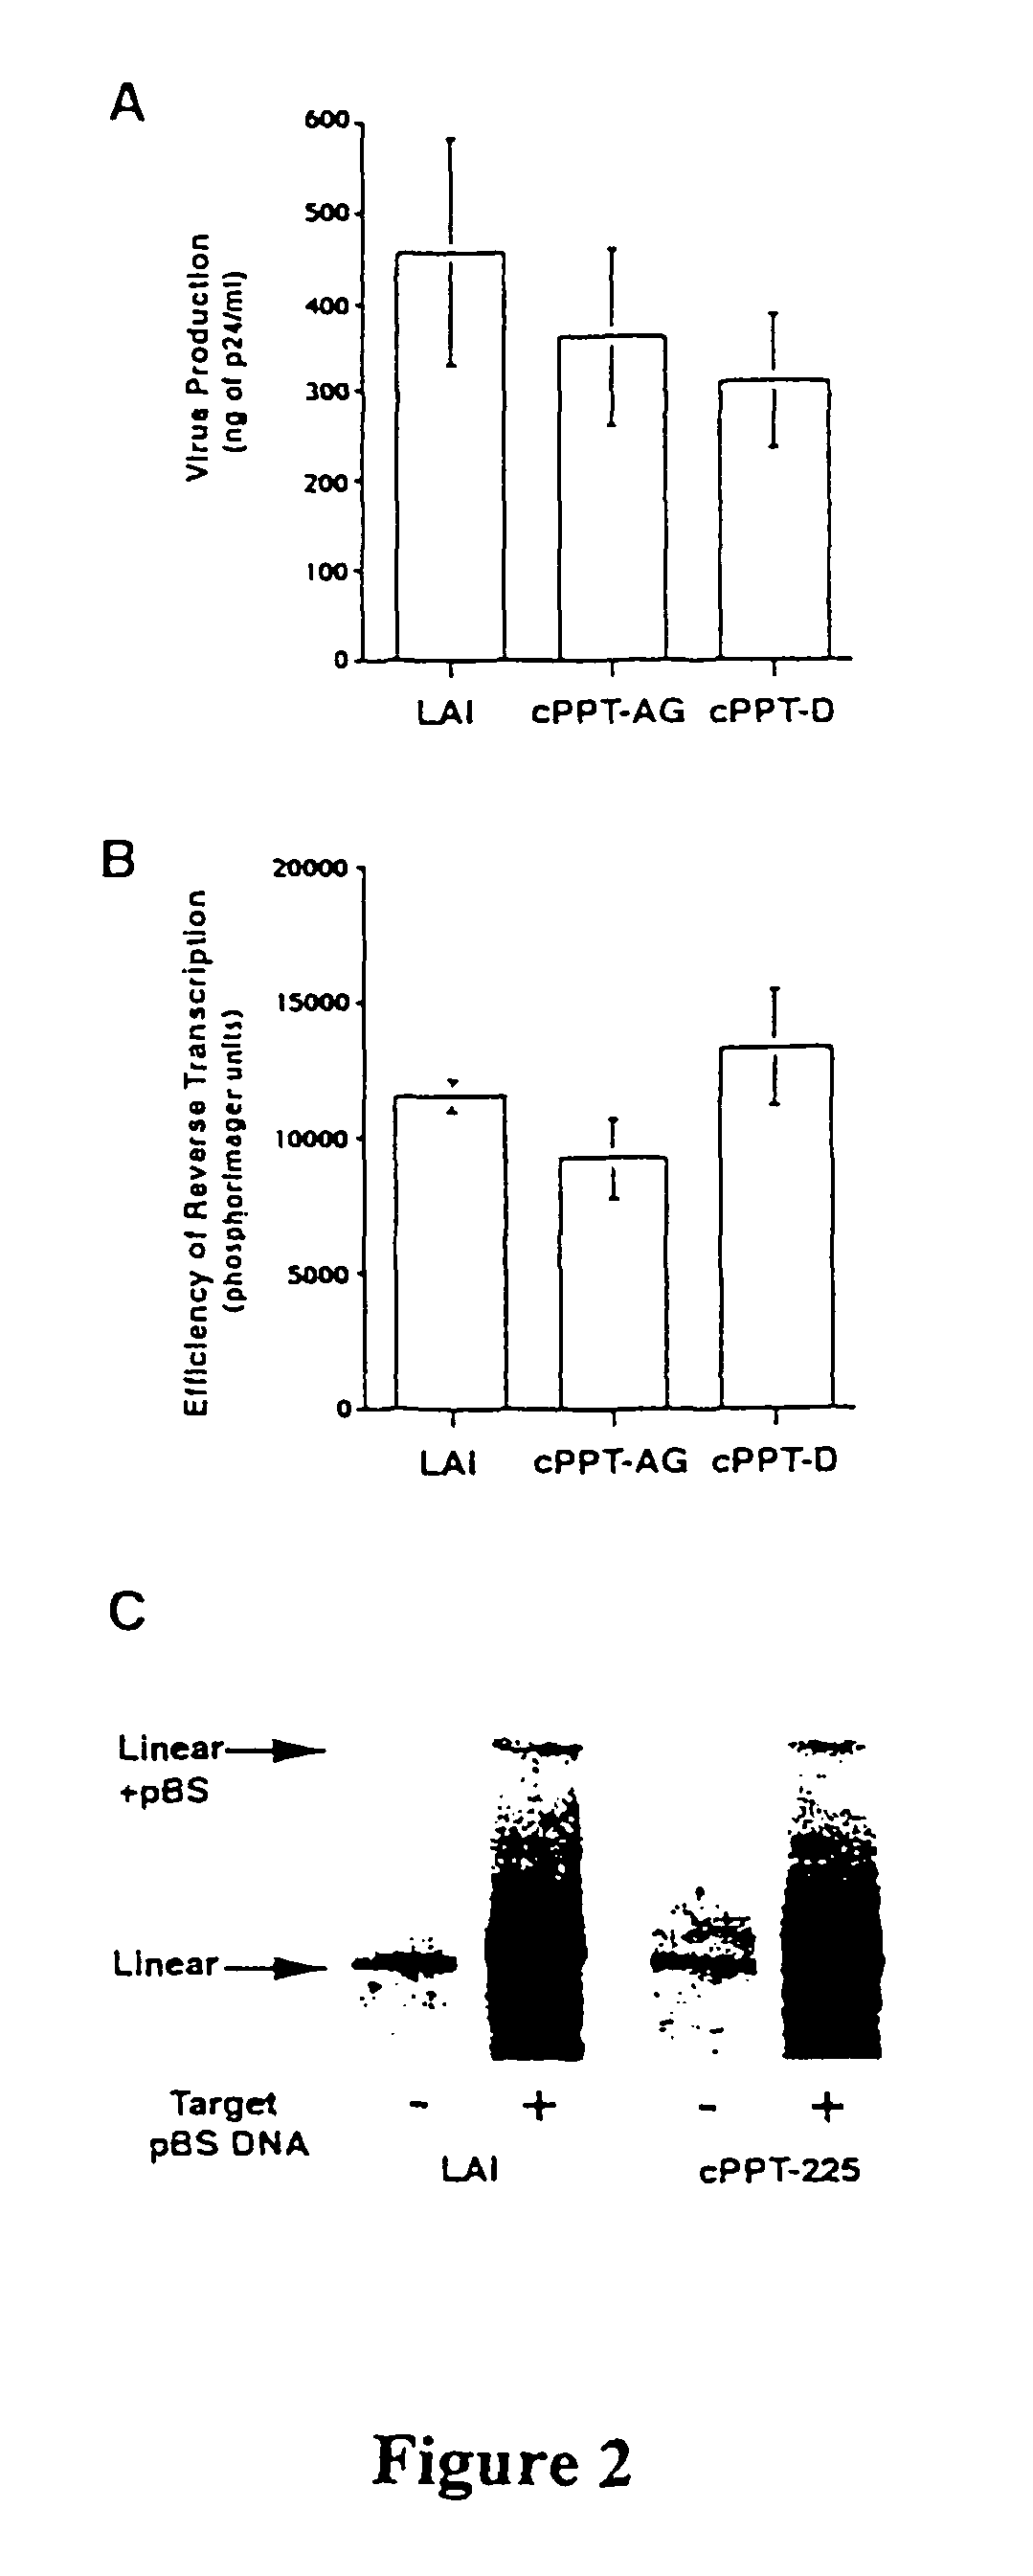 Lentiviral triplex DNA, and vectors and recombinant cells containing lentiviral triplex DNA